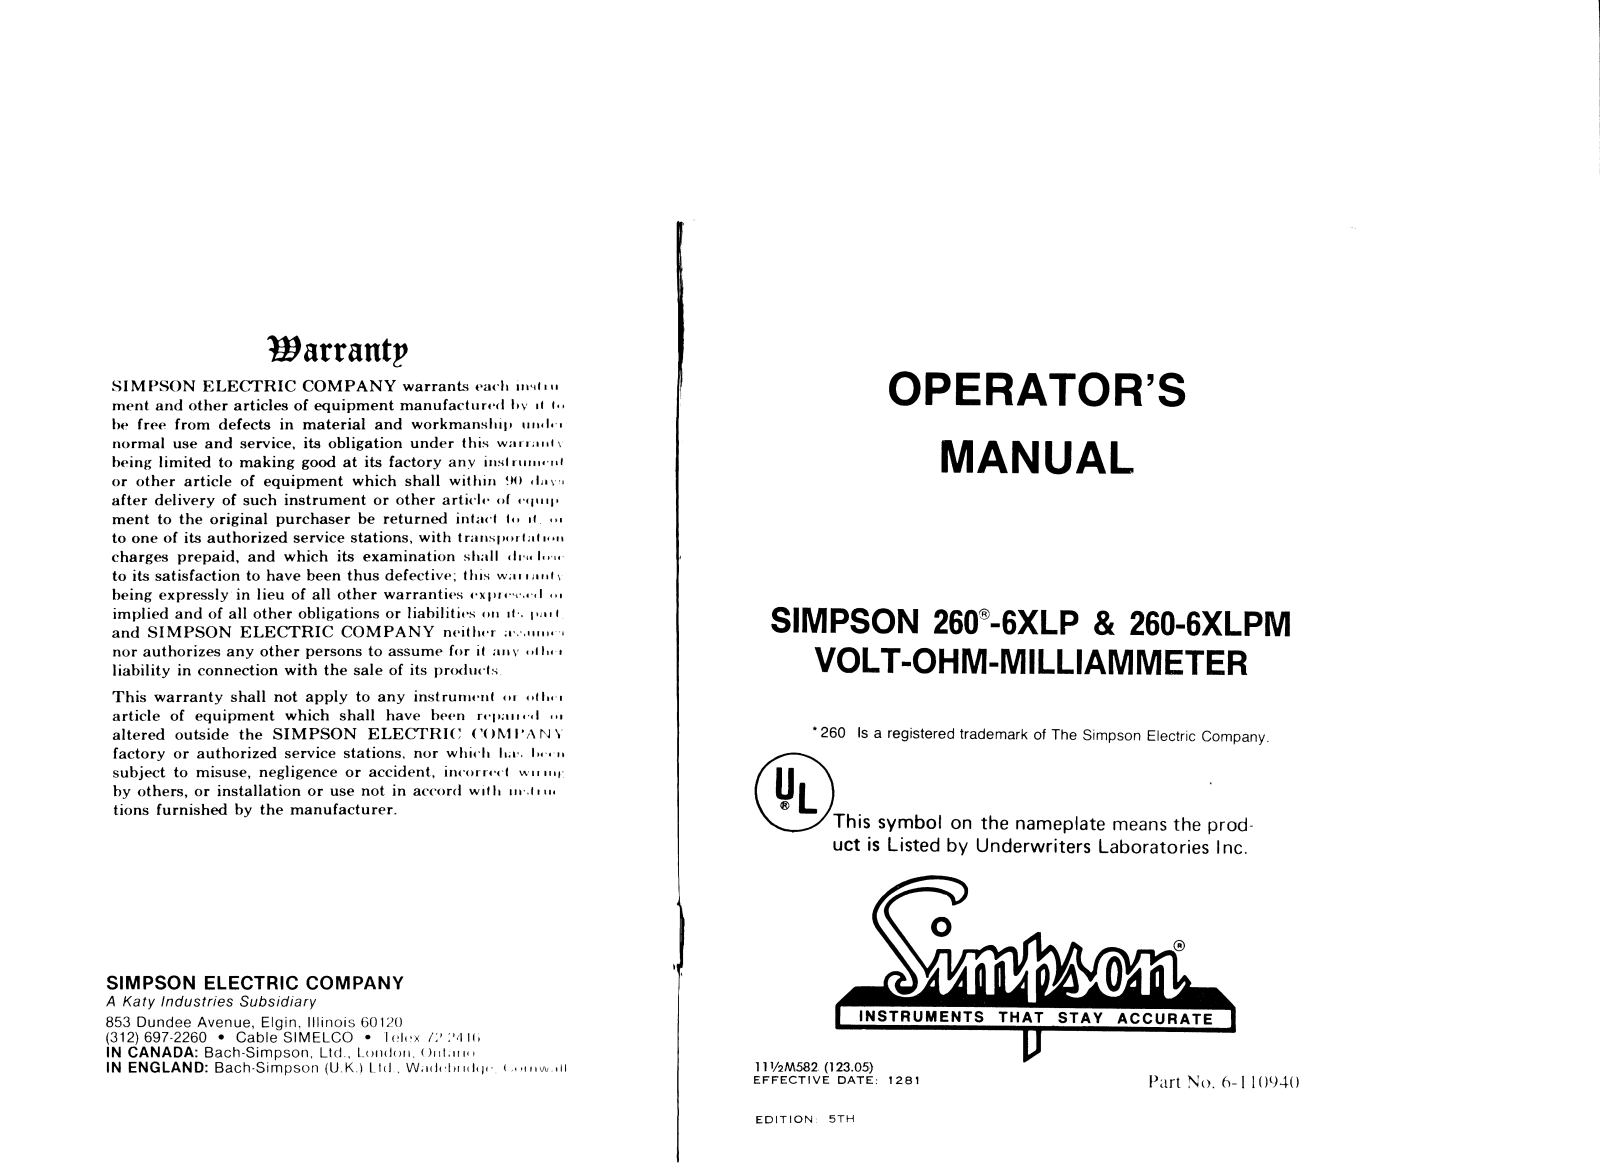 Simpson 260-6XLP, 260-6XLPM Service manual